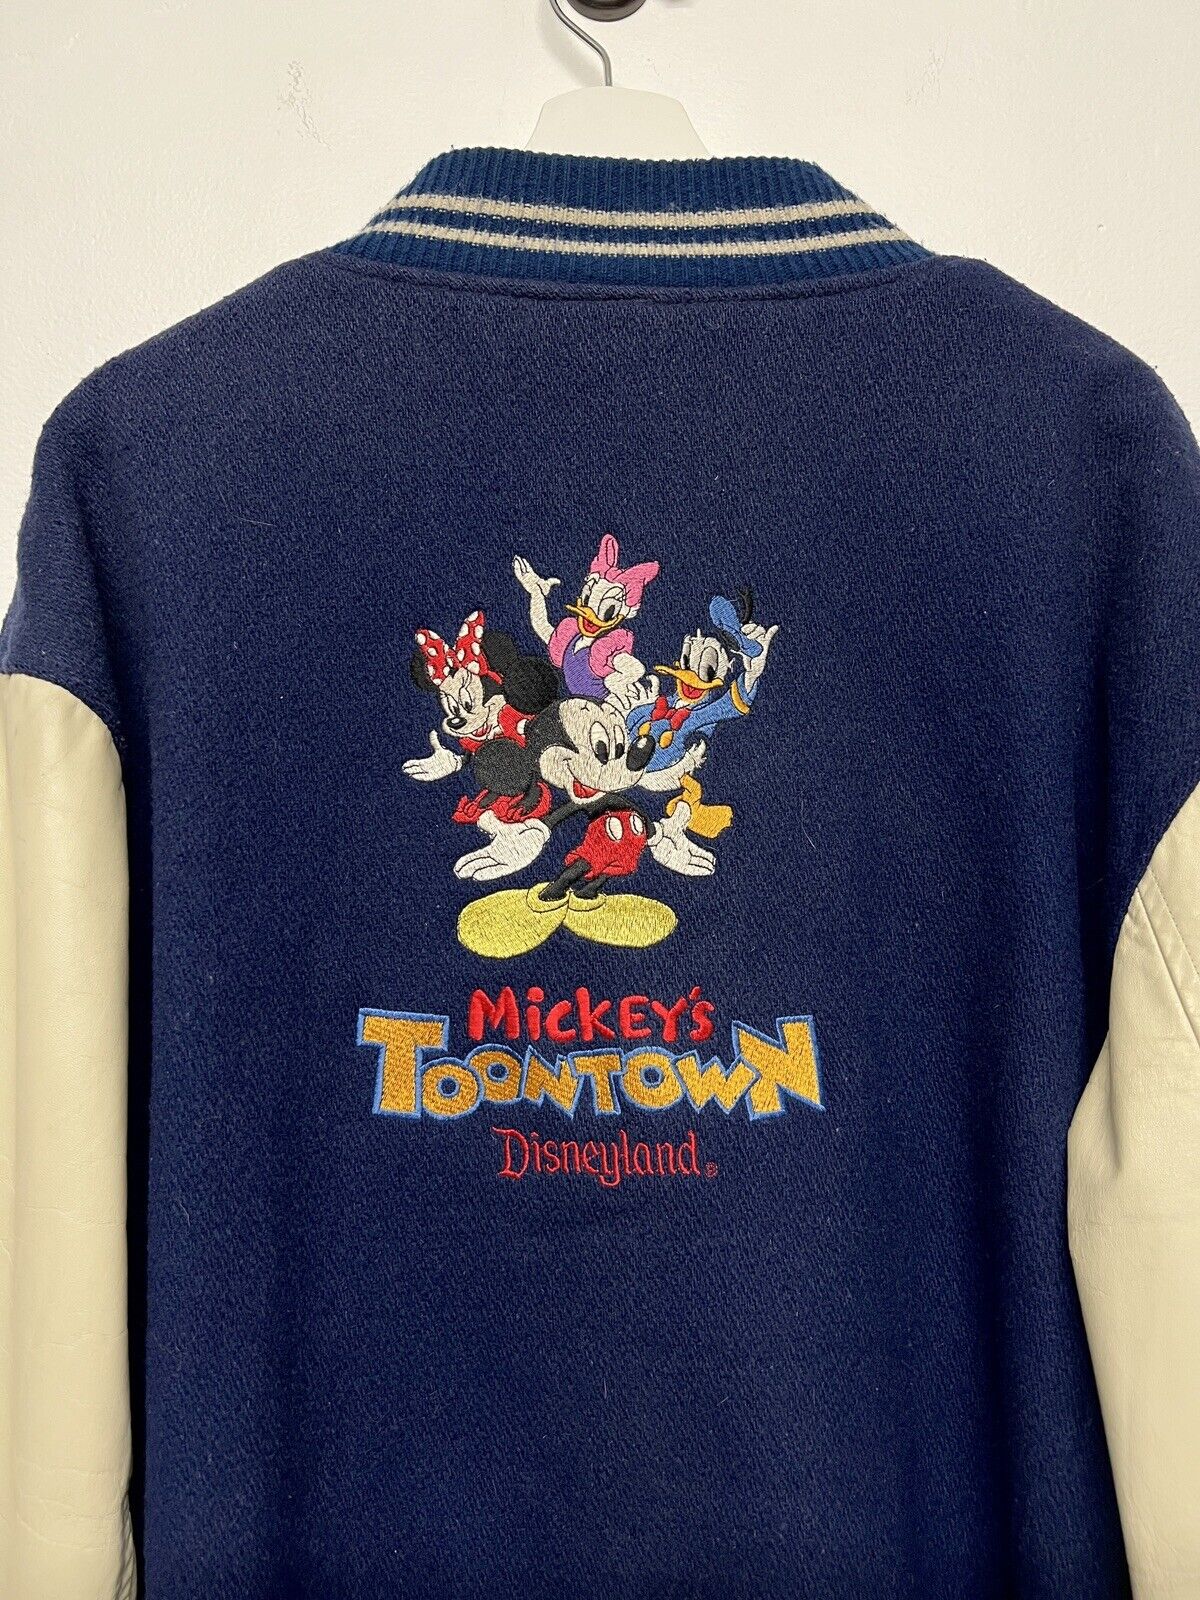 Disneyland Imagineer Vintage Varsity Jacket - Toon Town - 1 Of 1 - Rare